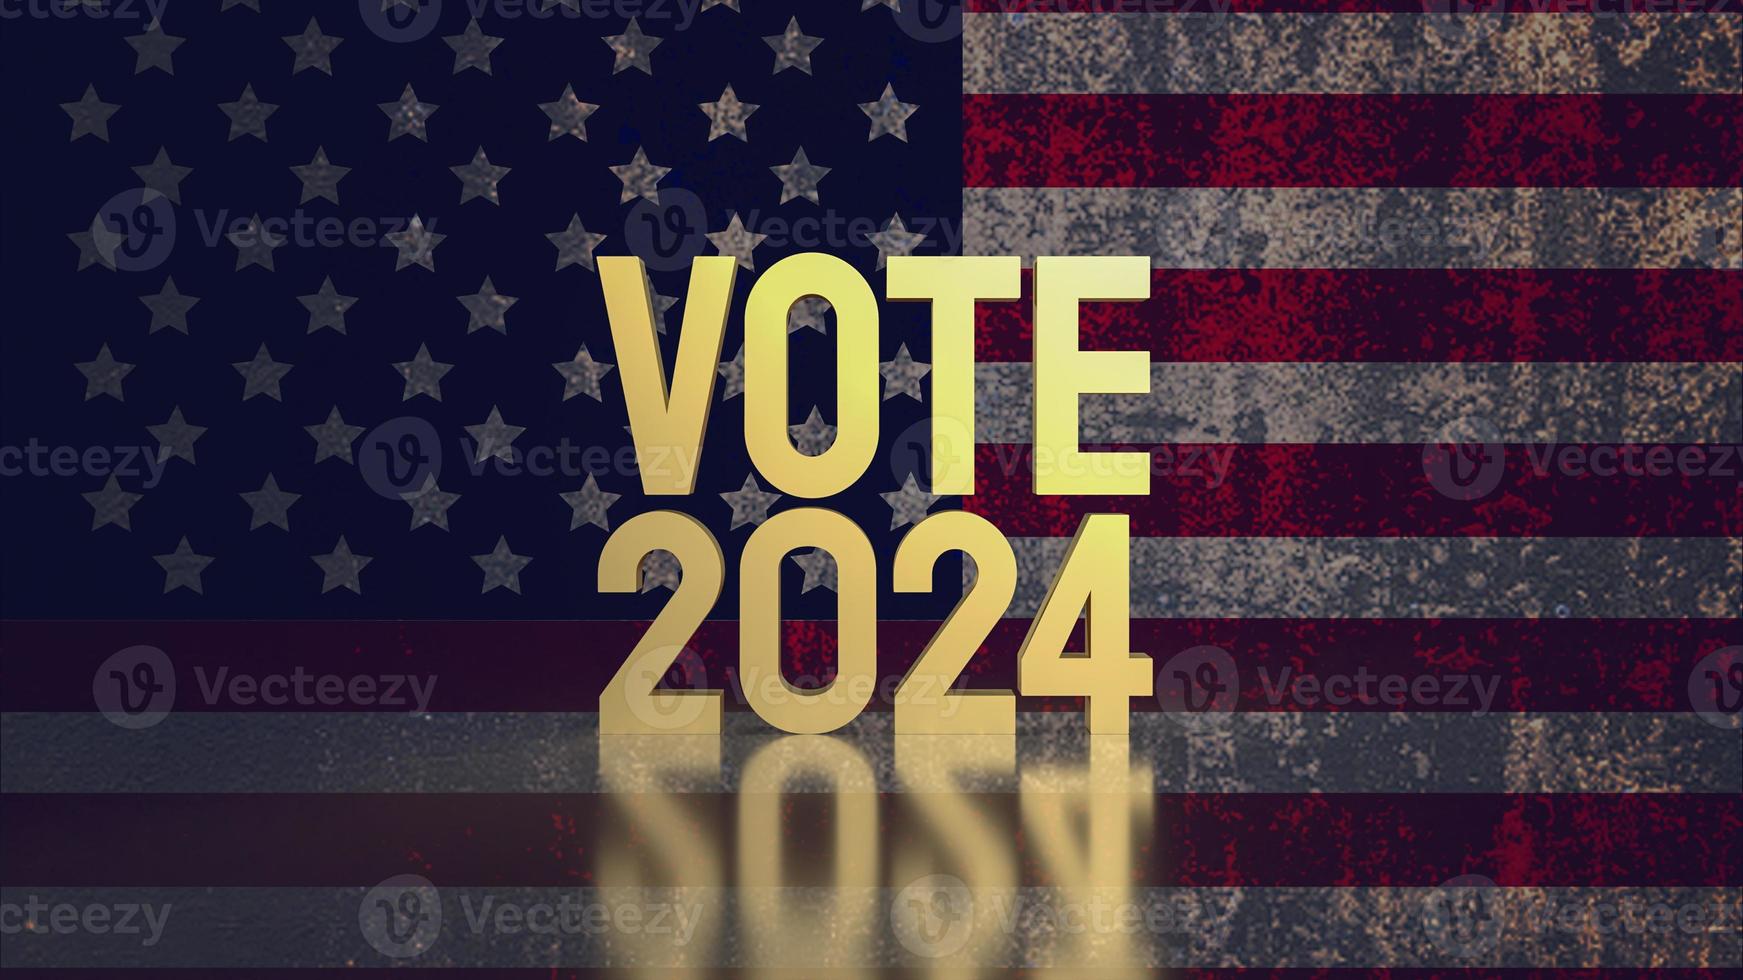 texte voter 2024 sur uni étape de Amérique drapeau 3d le rendu photo